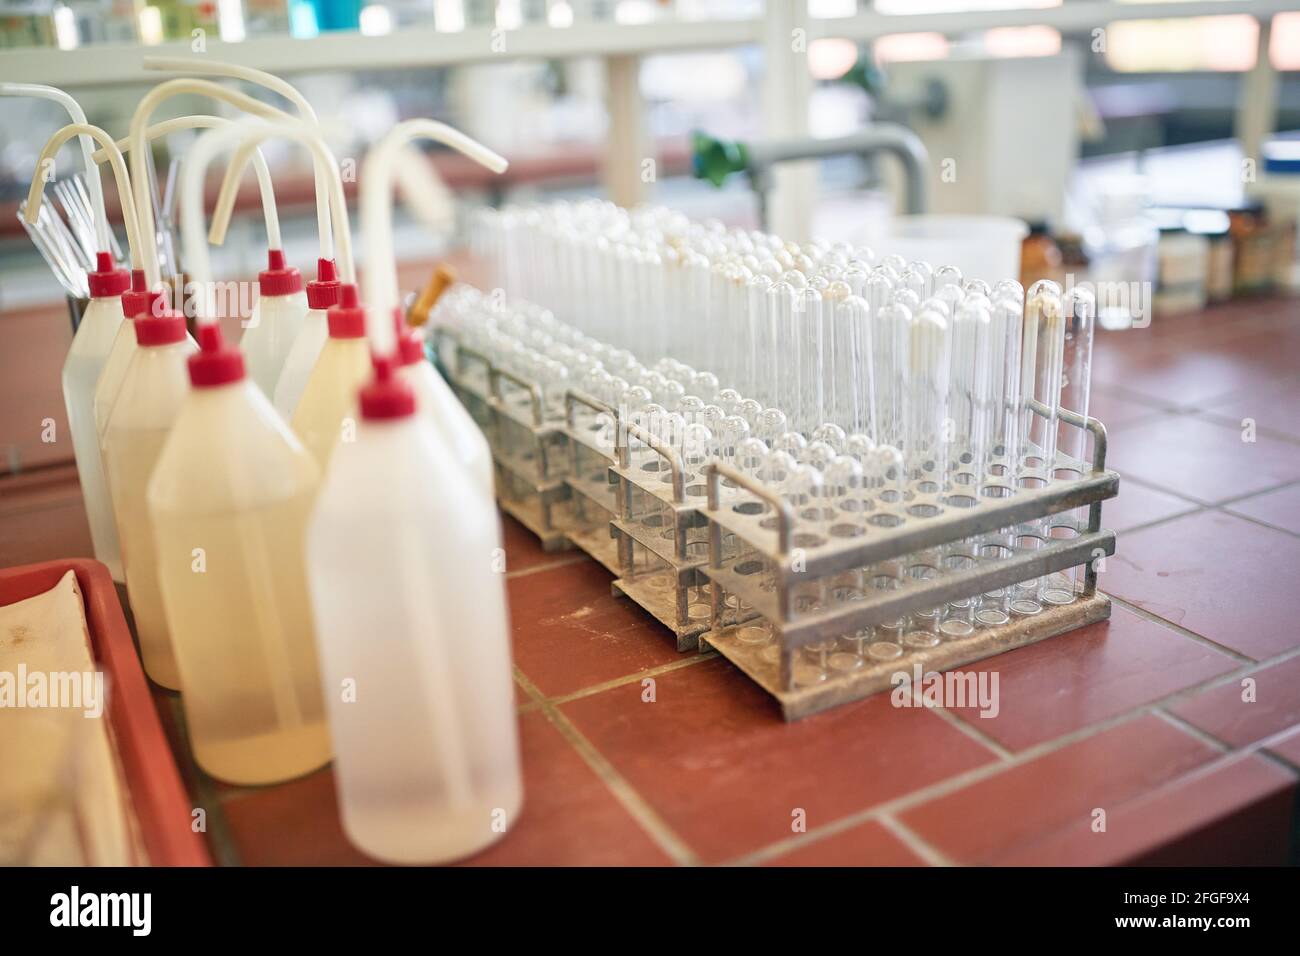 Laborgeräte in einer sterilen Laborumgebung ordentlich gestapelt. Chemie, Labor, Apparate Stockfoto